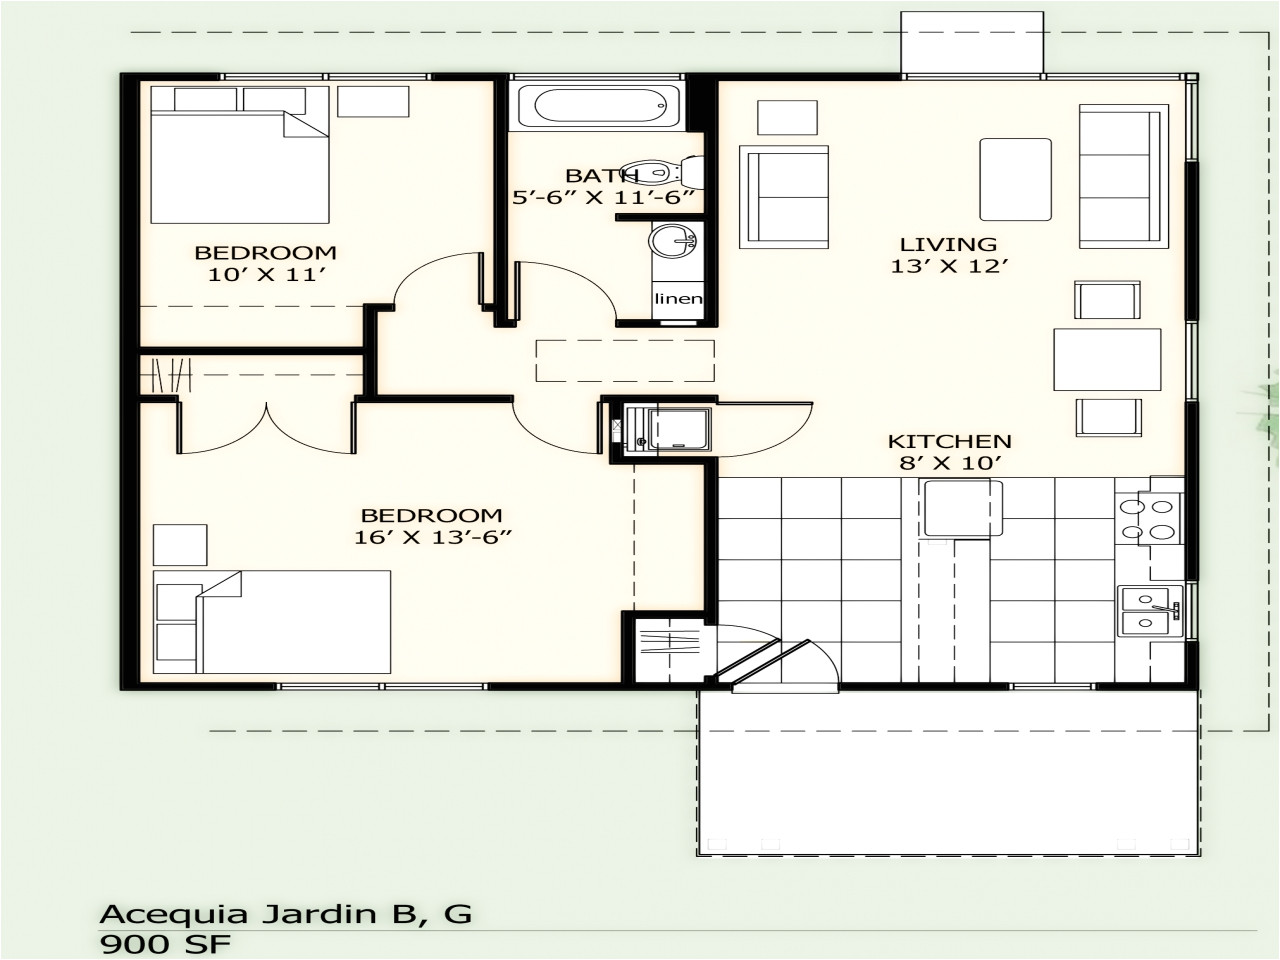 8fd3d2d897d3751b 900 sq ft house floor plans 900 square foot house plans